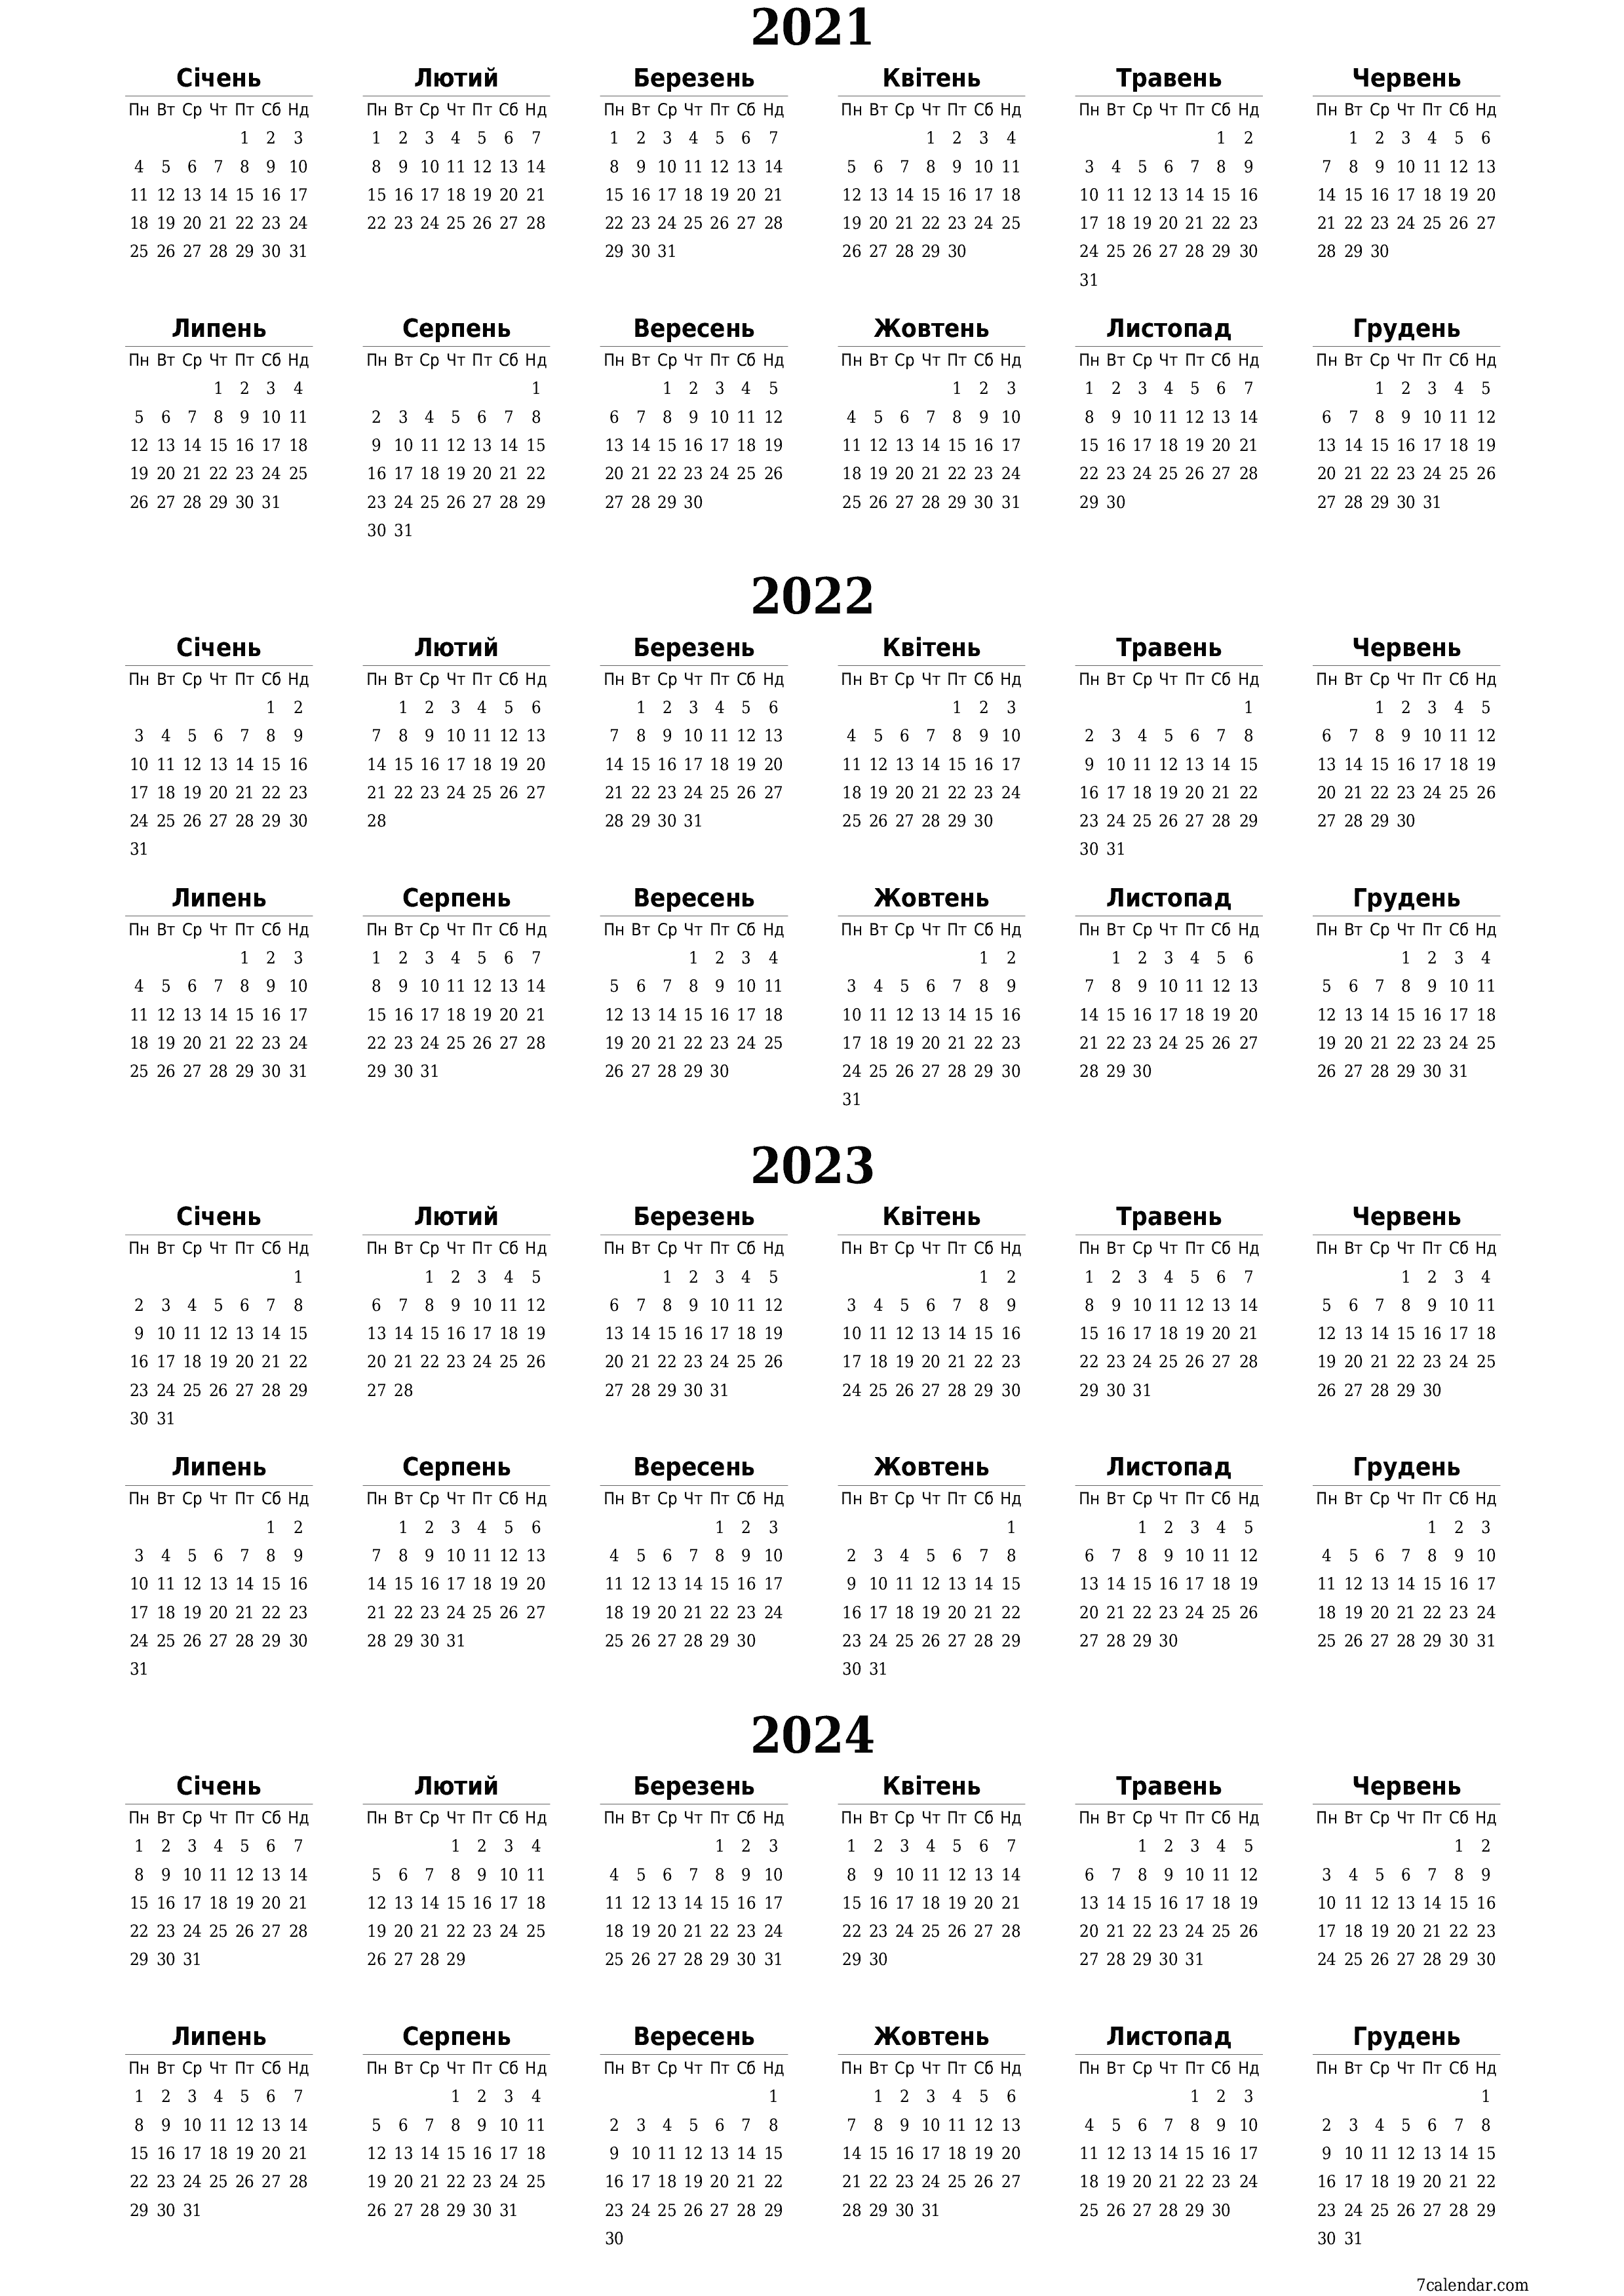  для друку настінний шаблон я безкоштовний вертикальний Щорічний календар Грудень (Гру) 2021